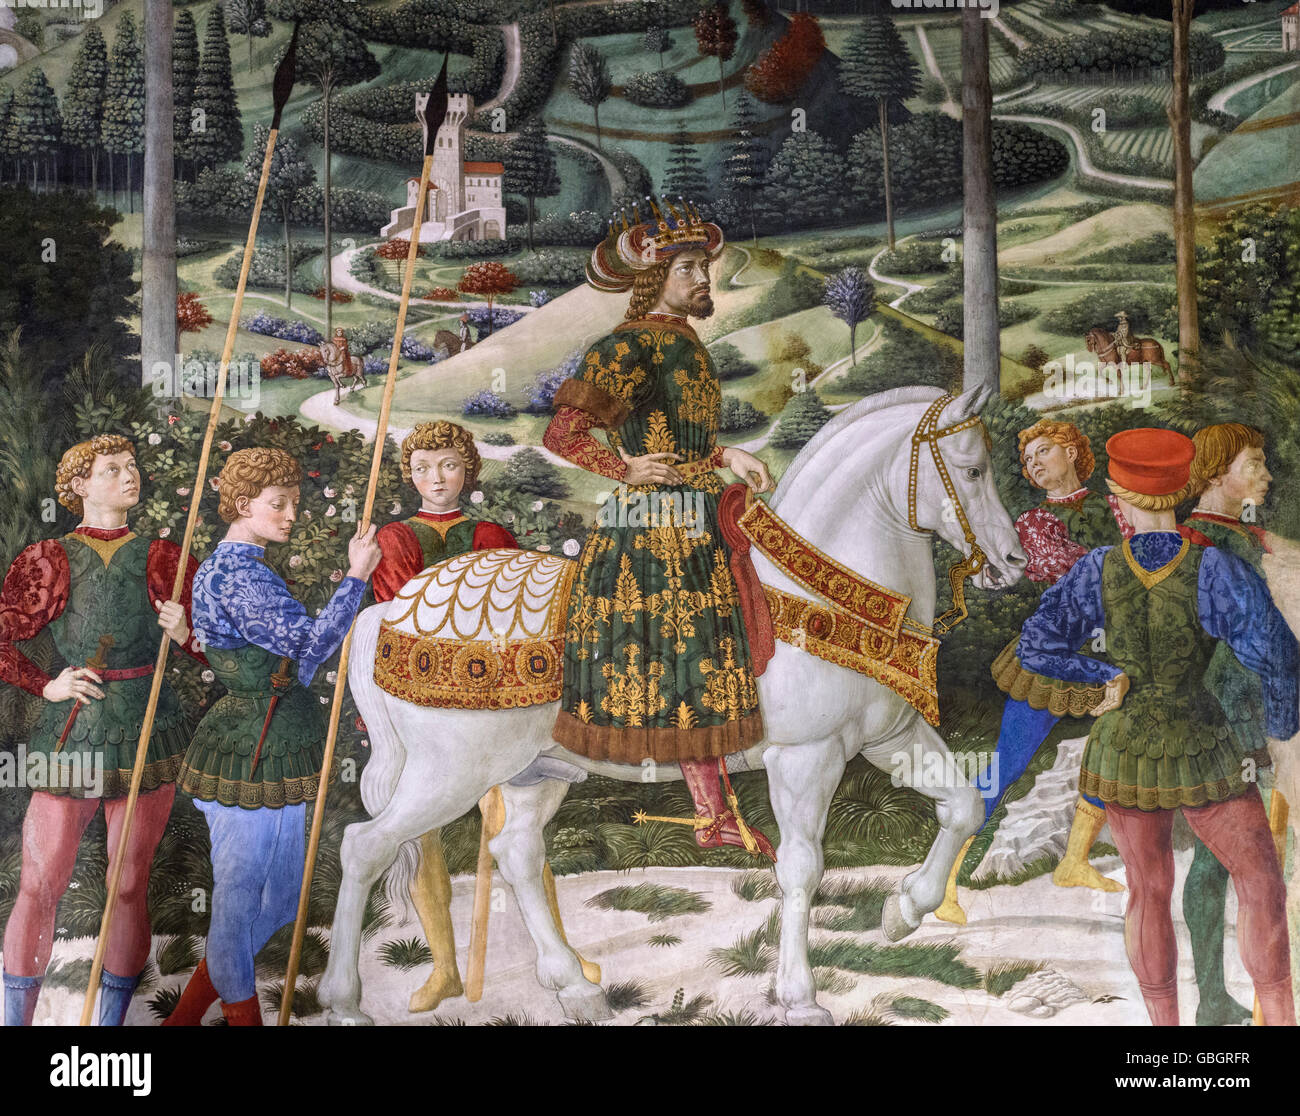 Florenz. Italien. Fresko in der Prozession der Heiligen Drei Könige (Ca. 1460) von Benozzo Gozzoli, Detail der König Balthasar auf dem Pferd. Capella dei Magi. Stockfoto